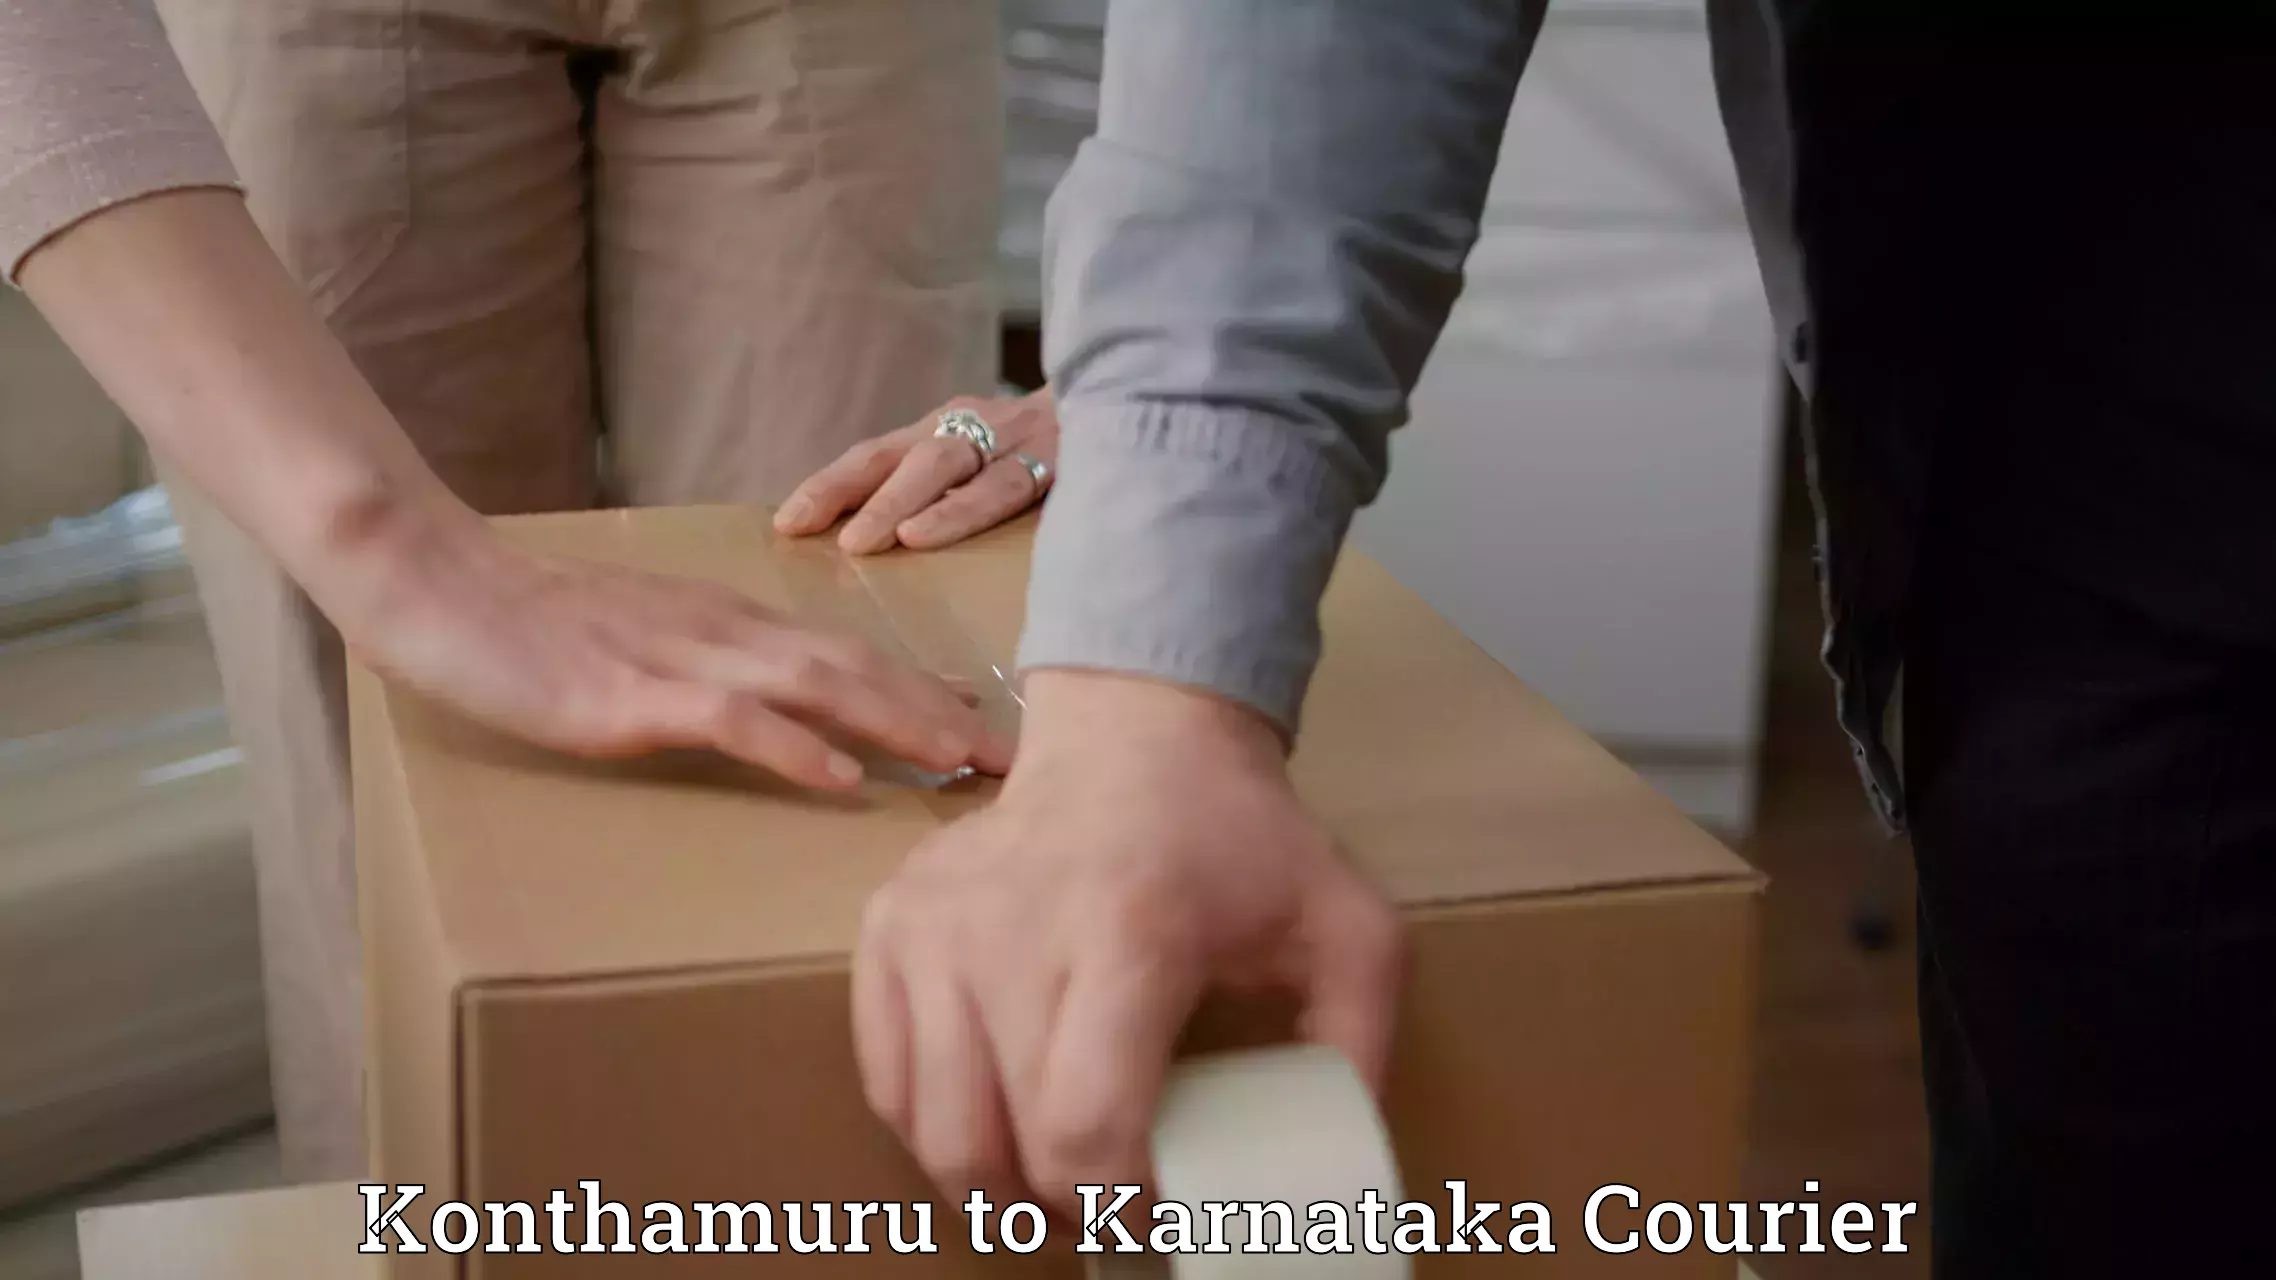 Nationwide parcel services Konthamuru to Nanjangud